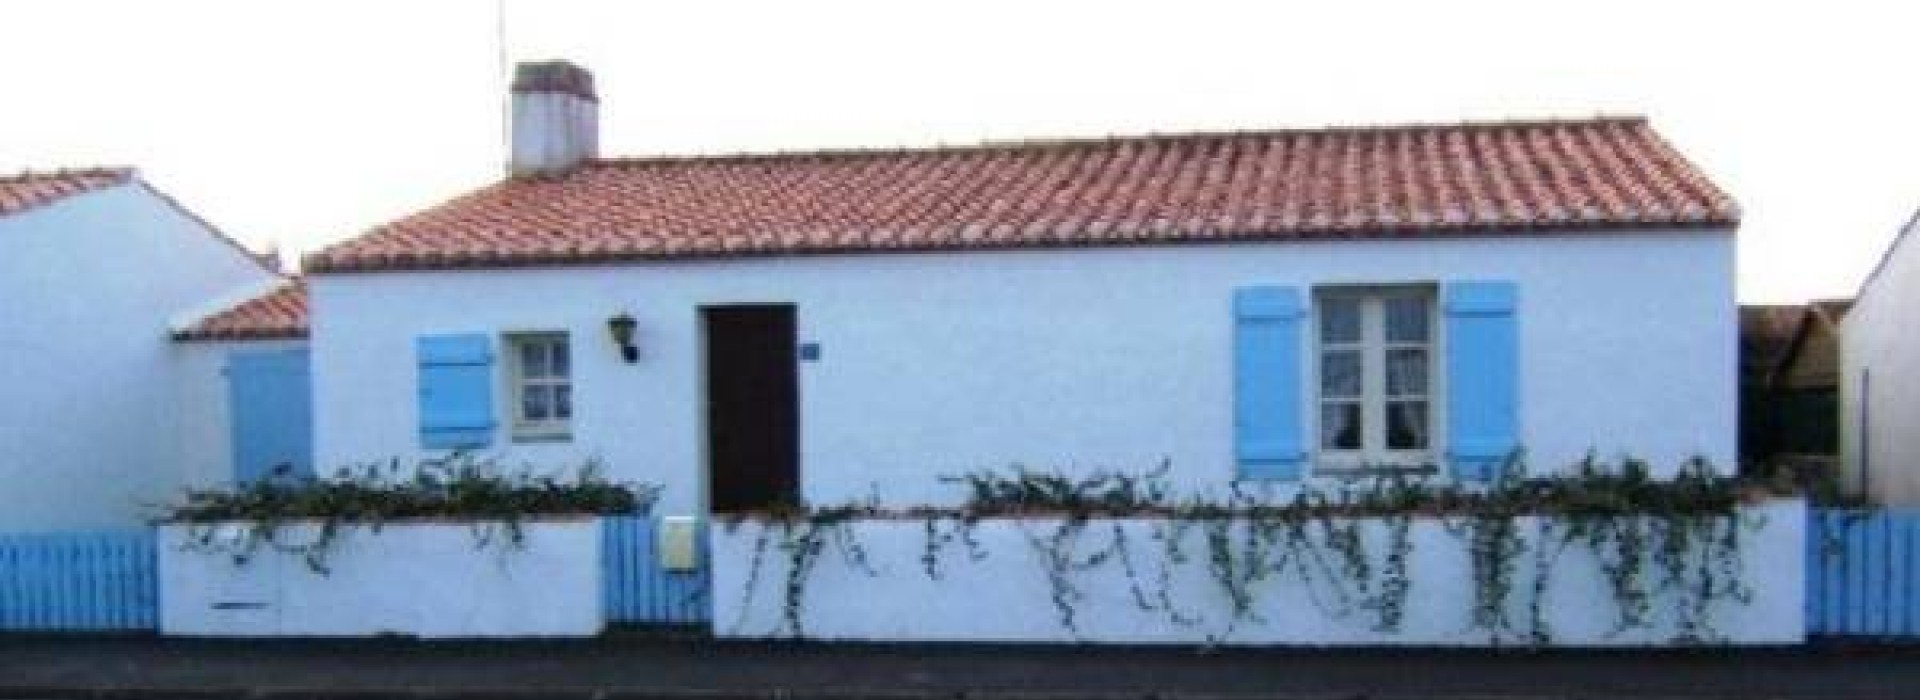 Maison independante a 1km de Noirmoutier en l'ile